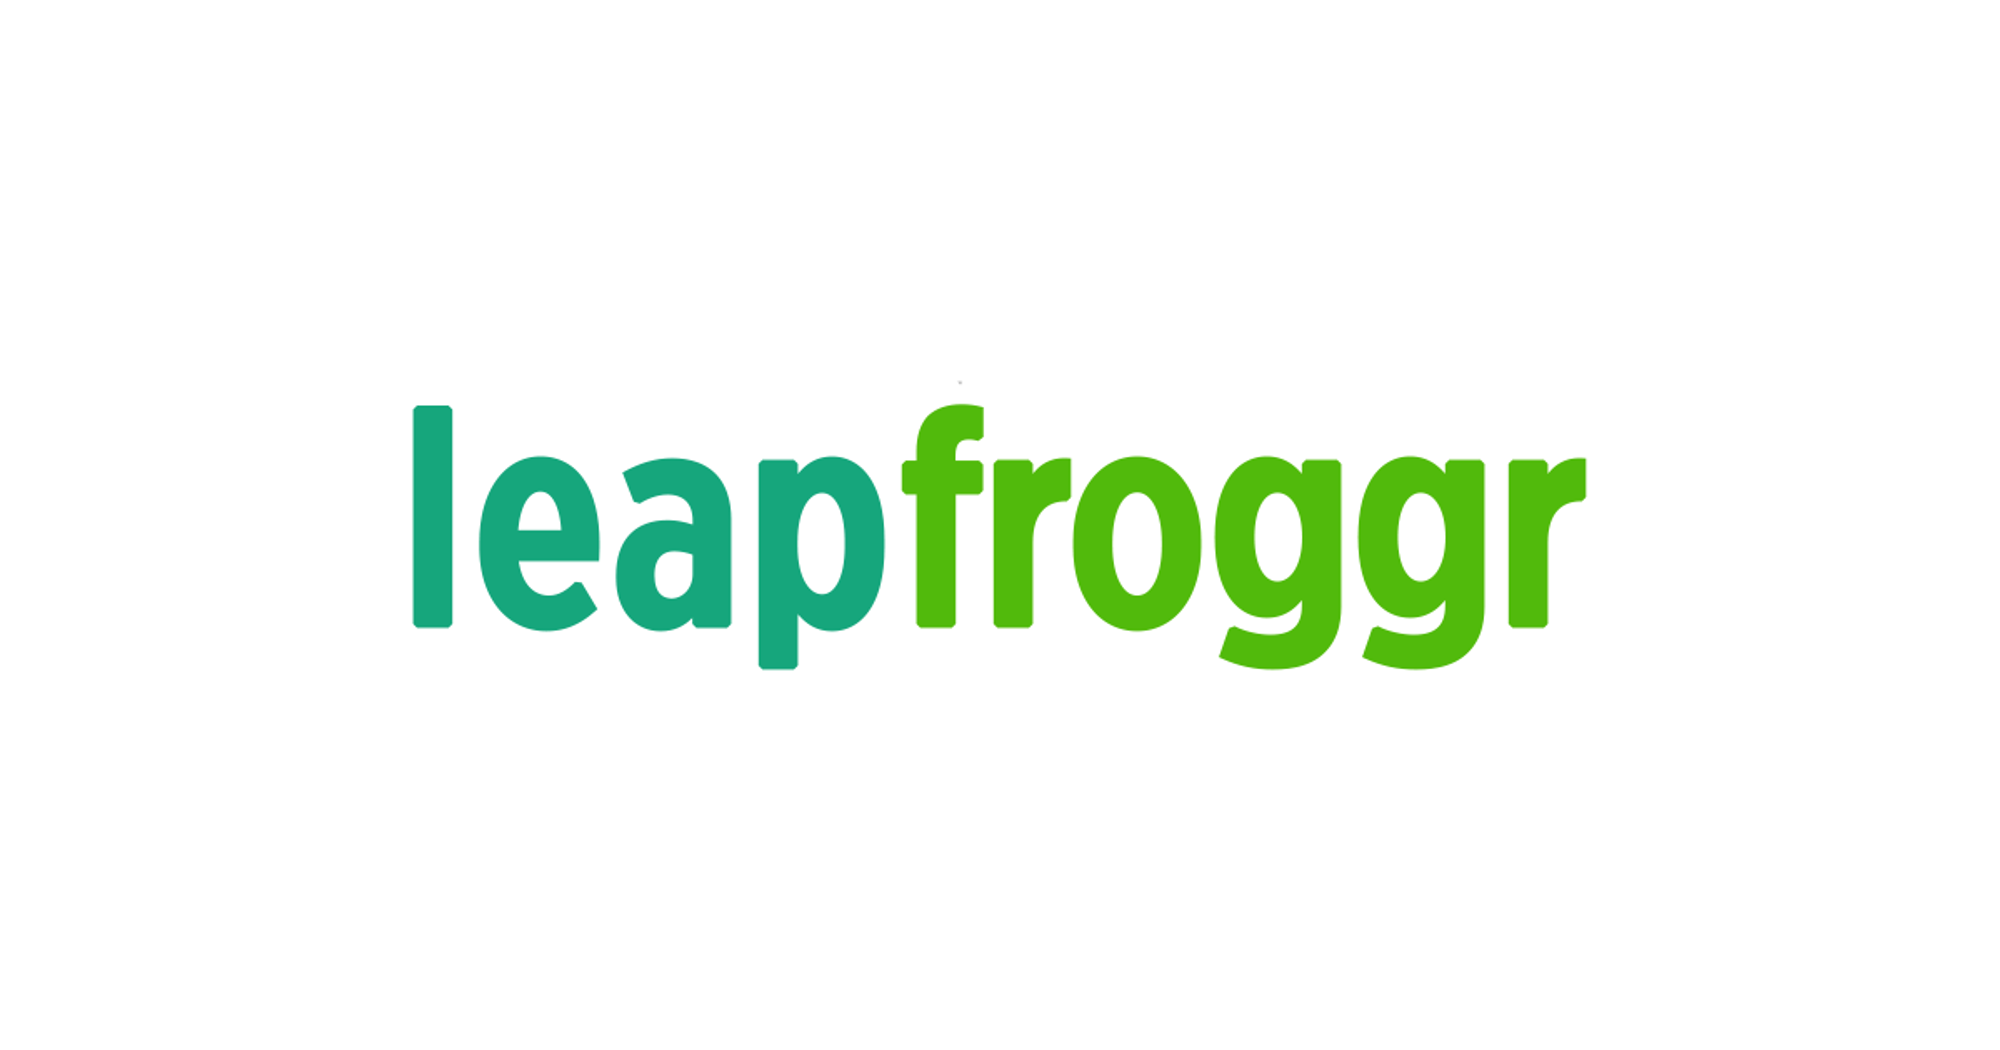 Full Stack Developer at LeapFroggr Inc.